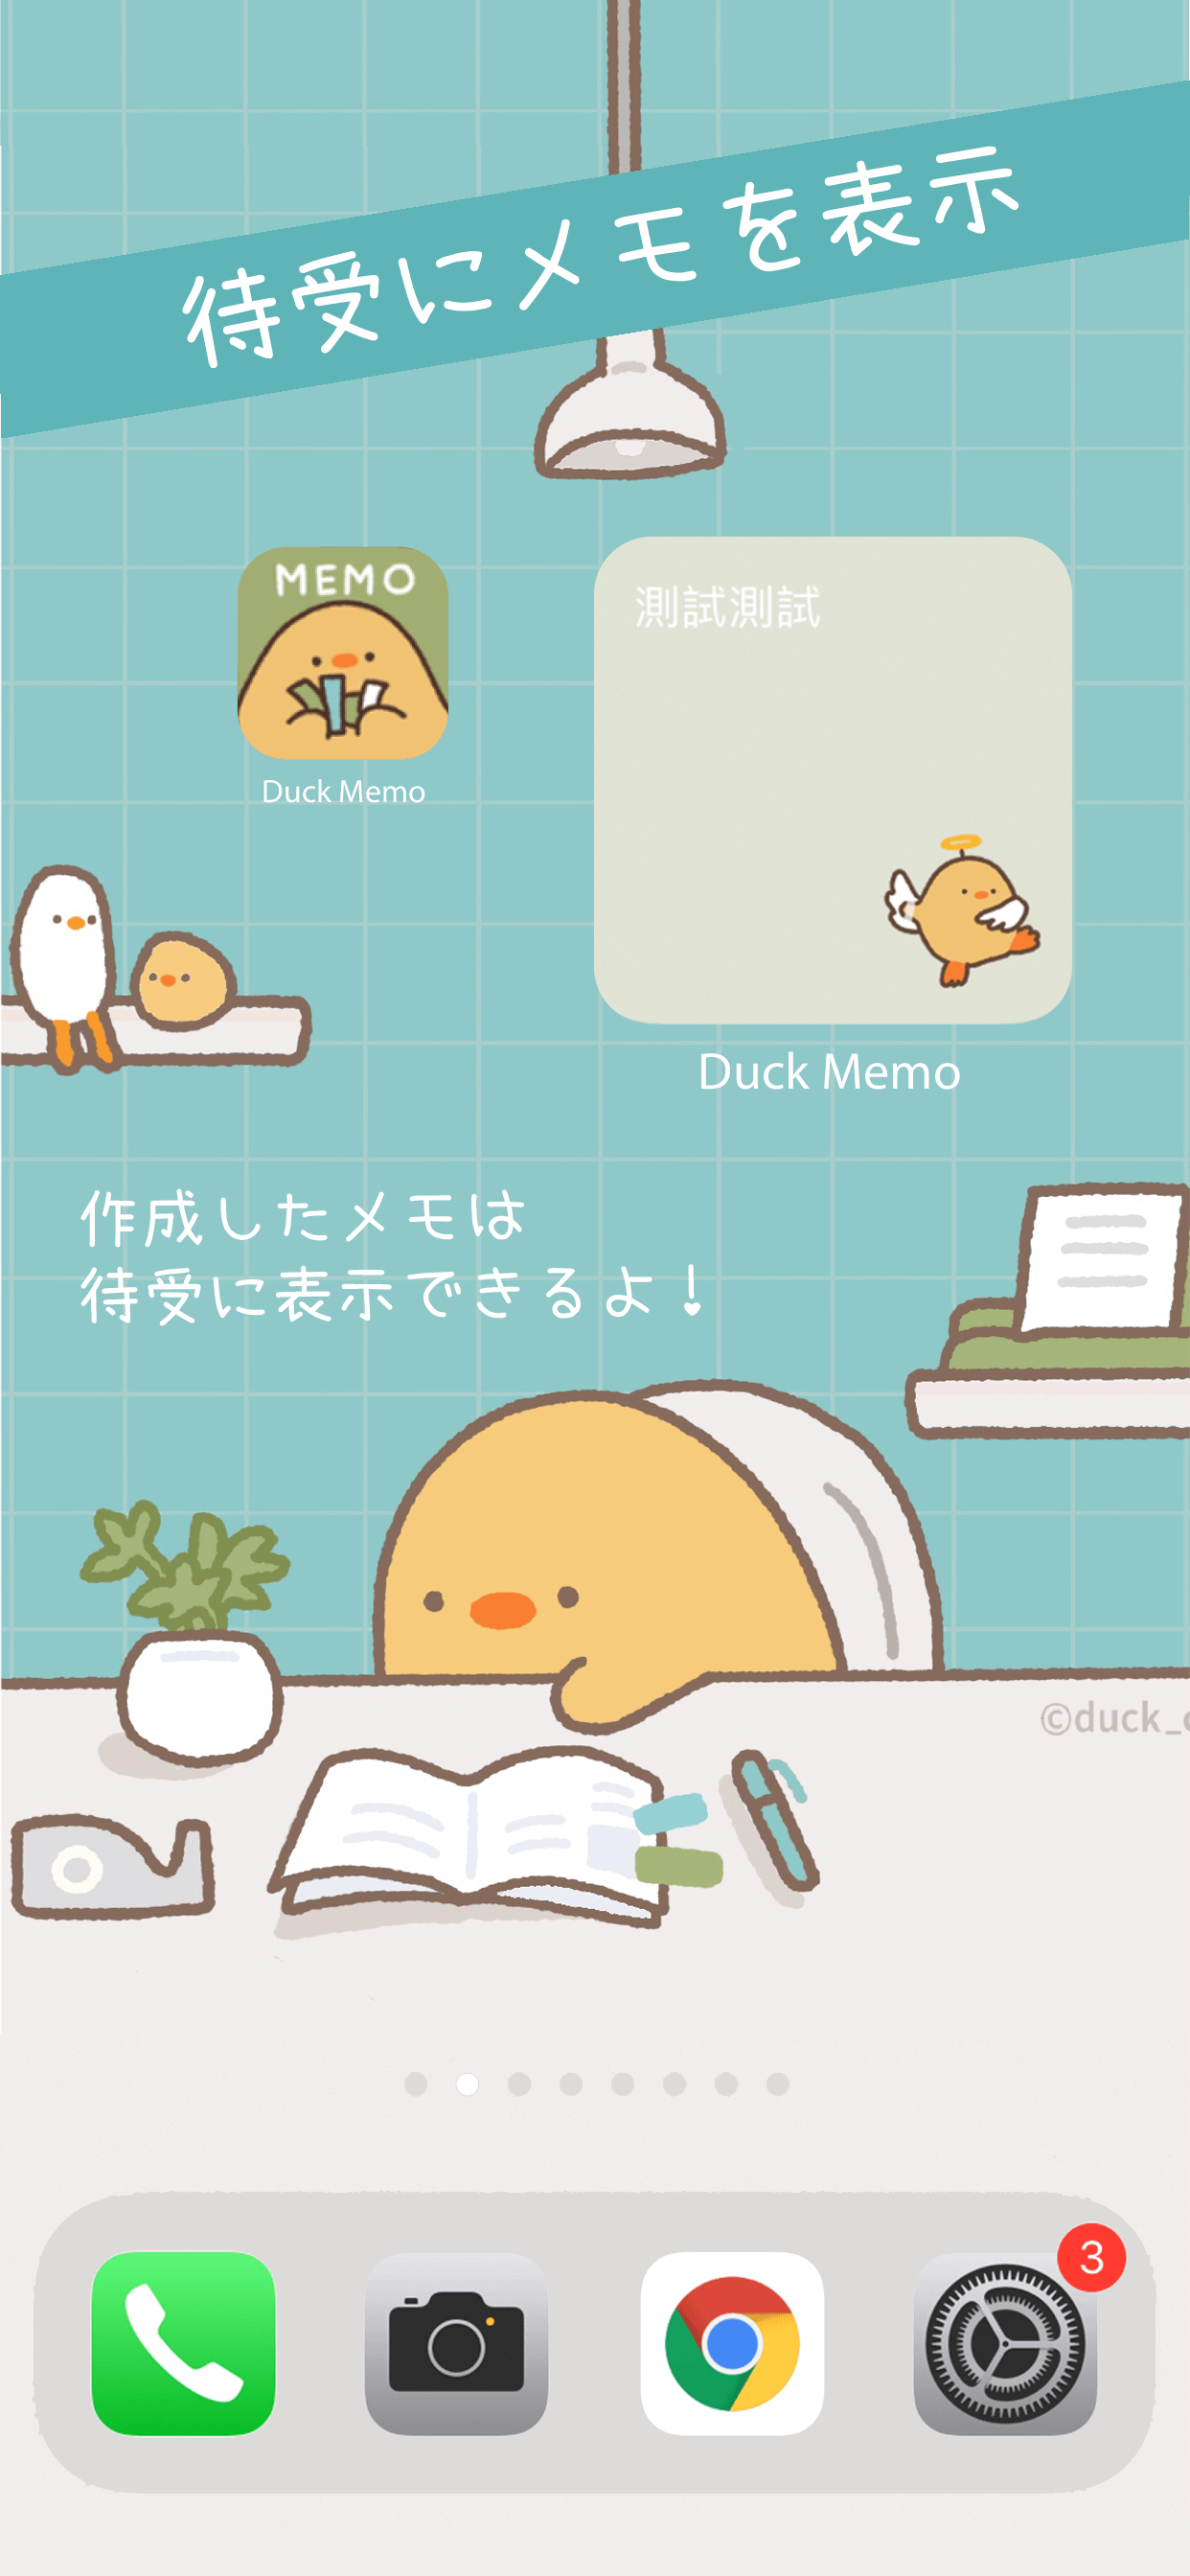 Duck Memo